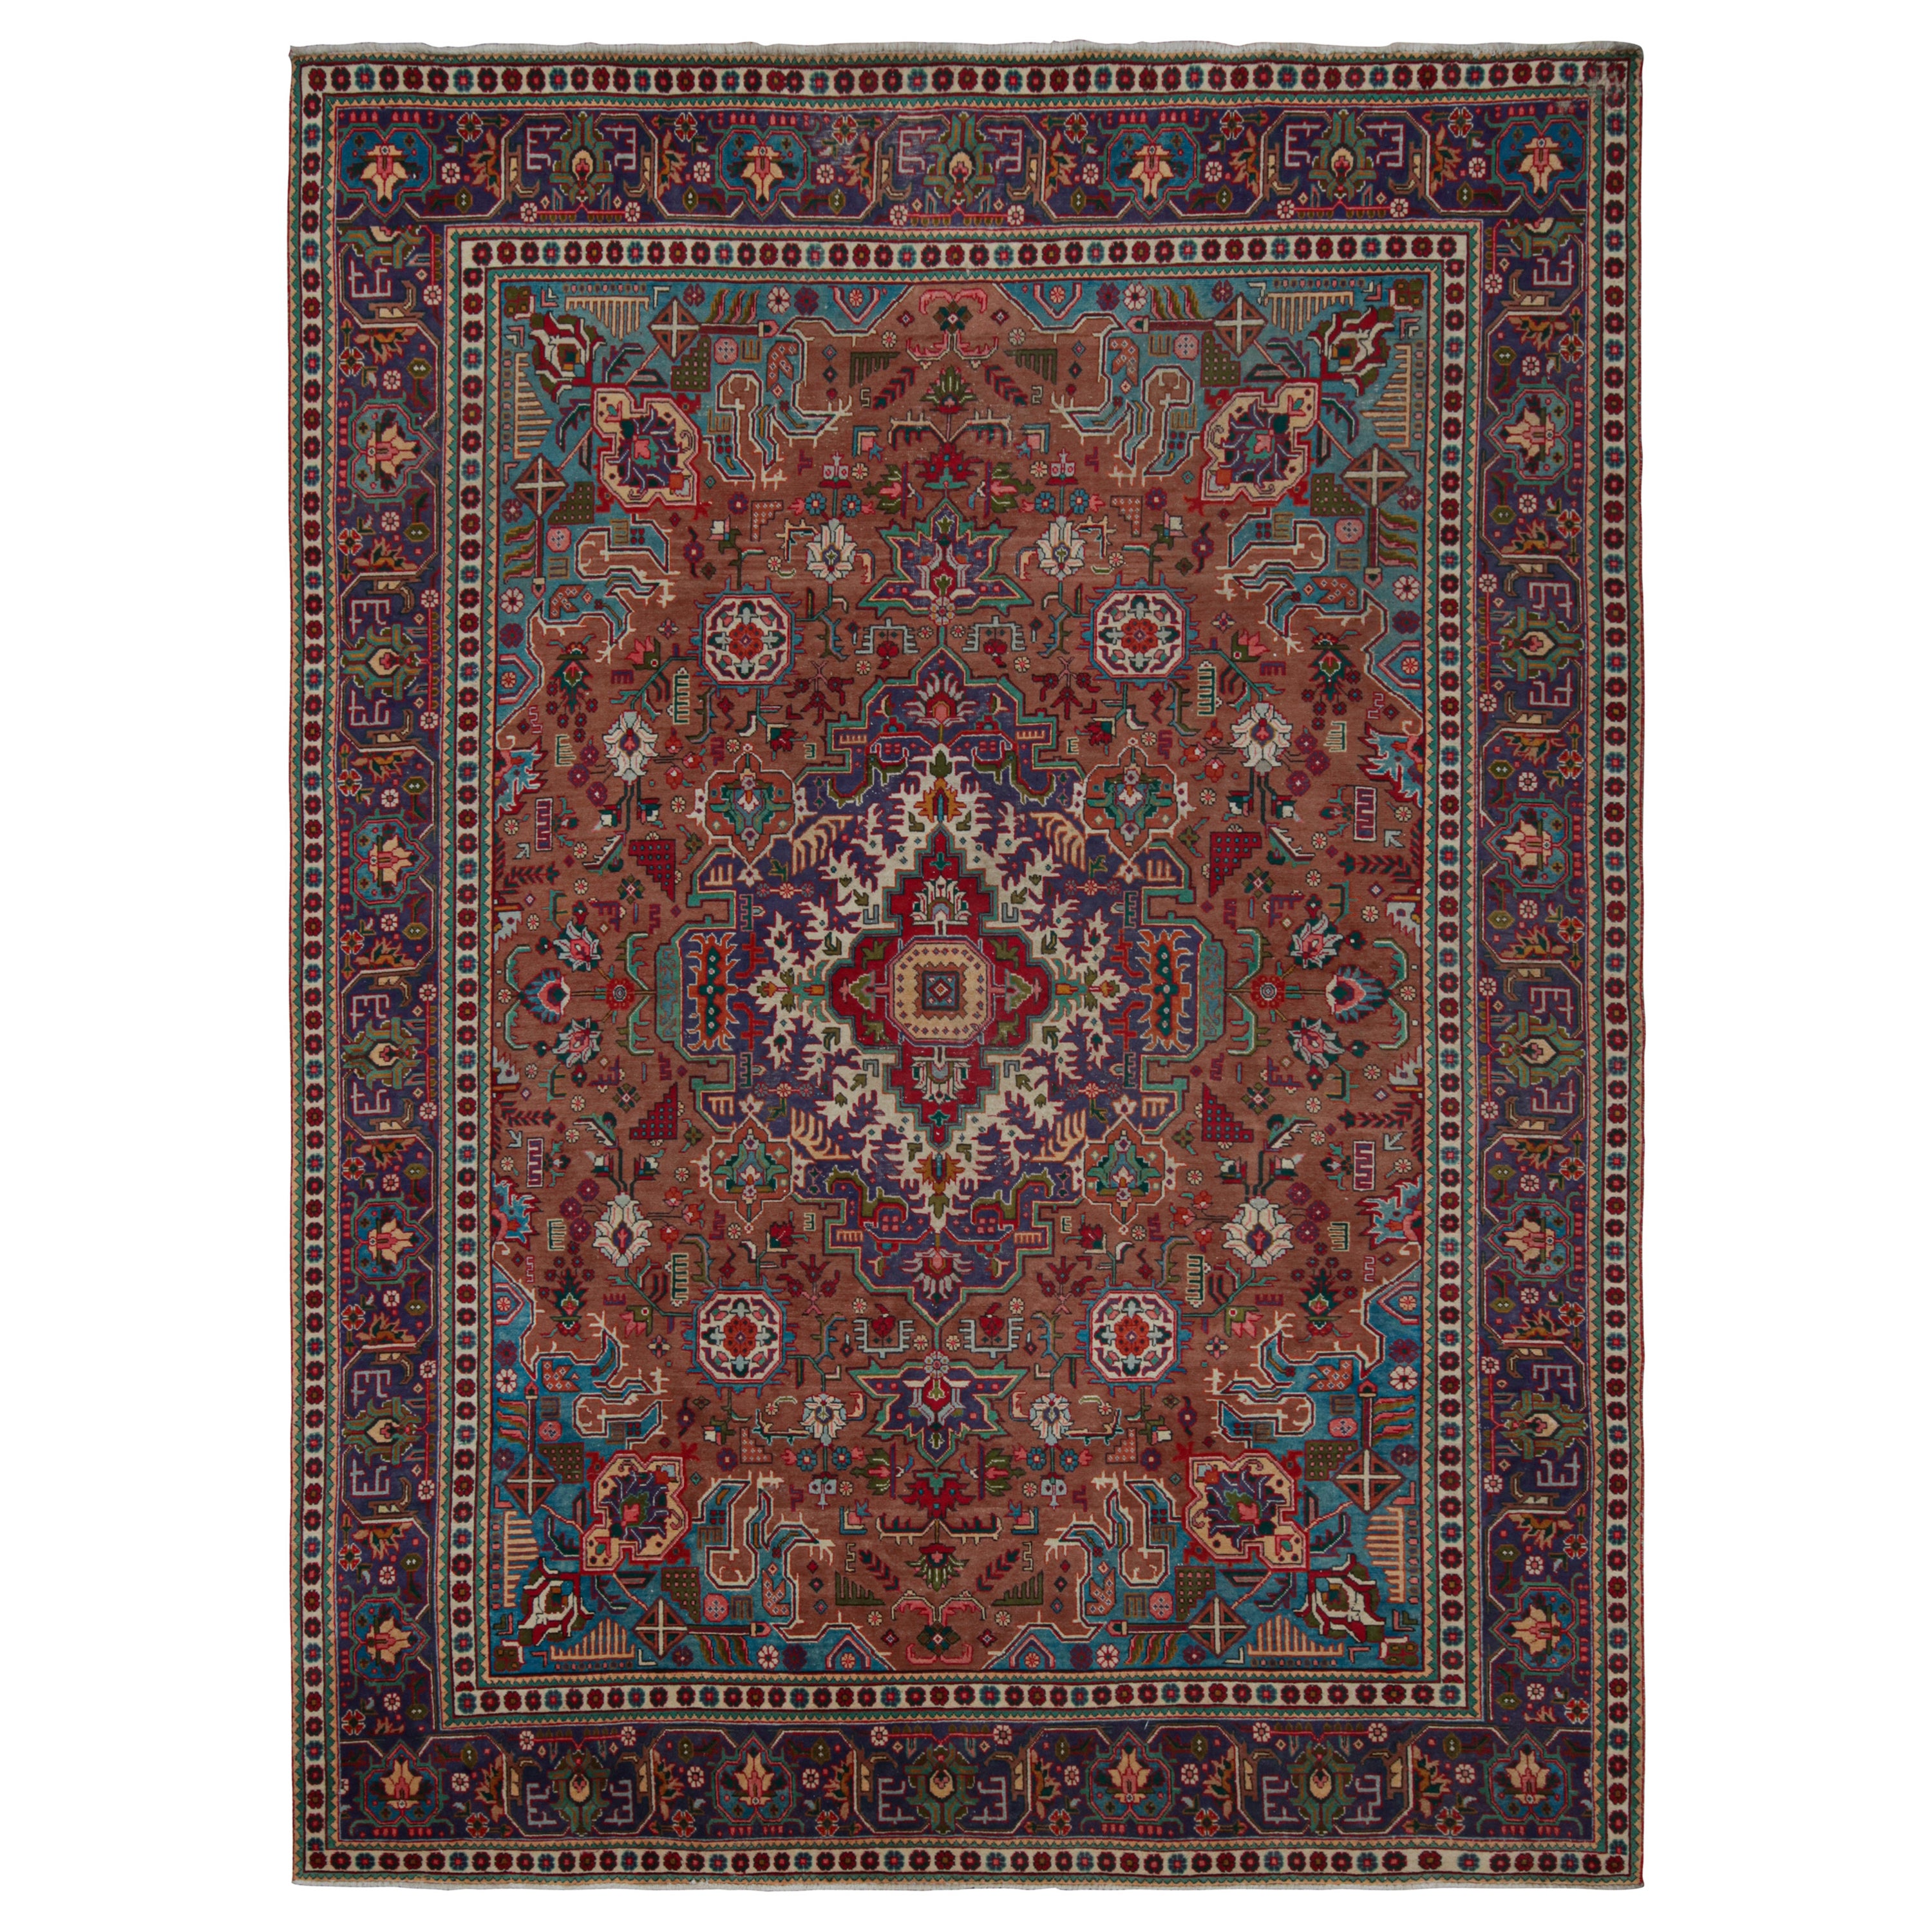 Vintage Persian rug in Indigo, Beige-Brown Patterns by Rug & Kilim